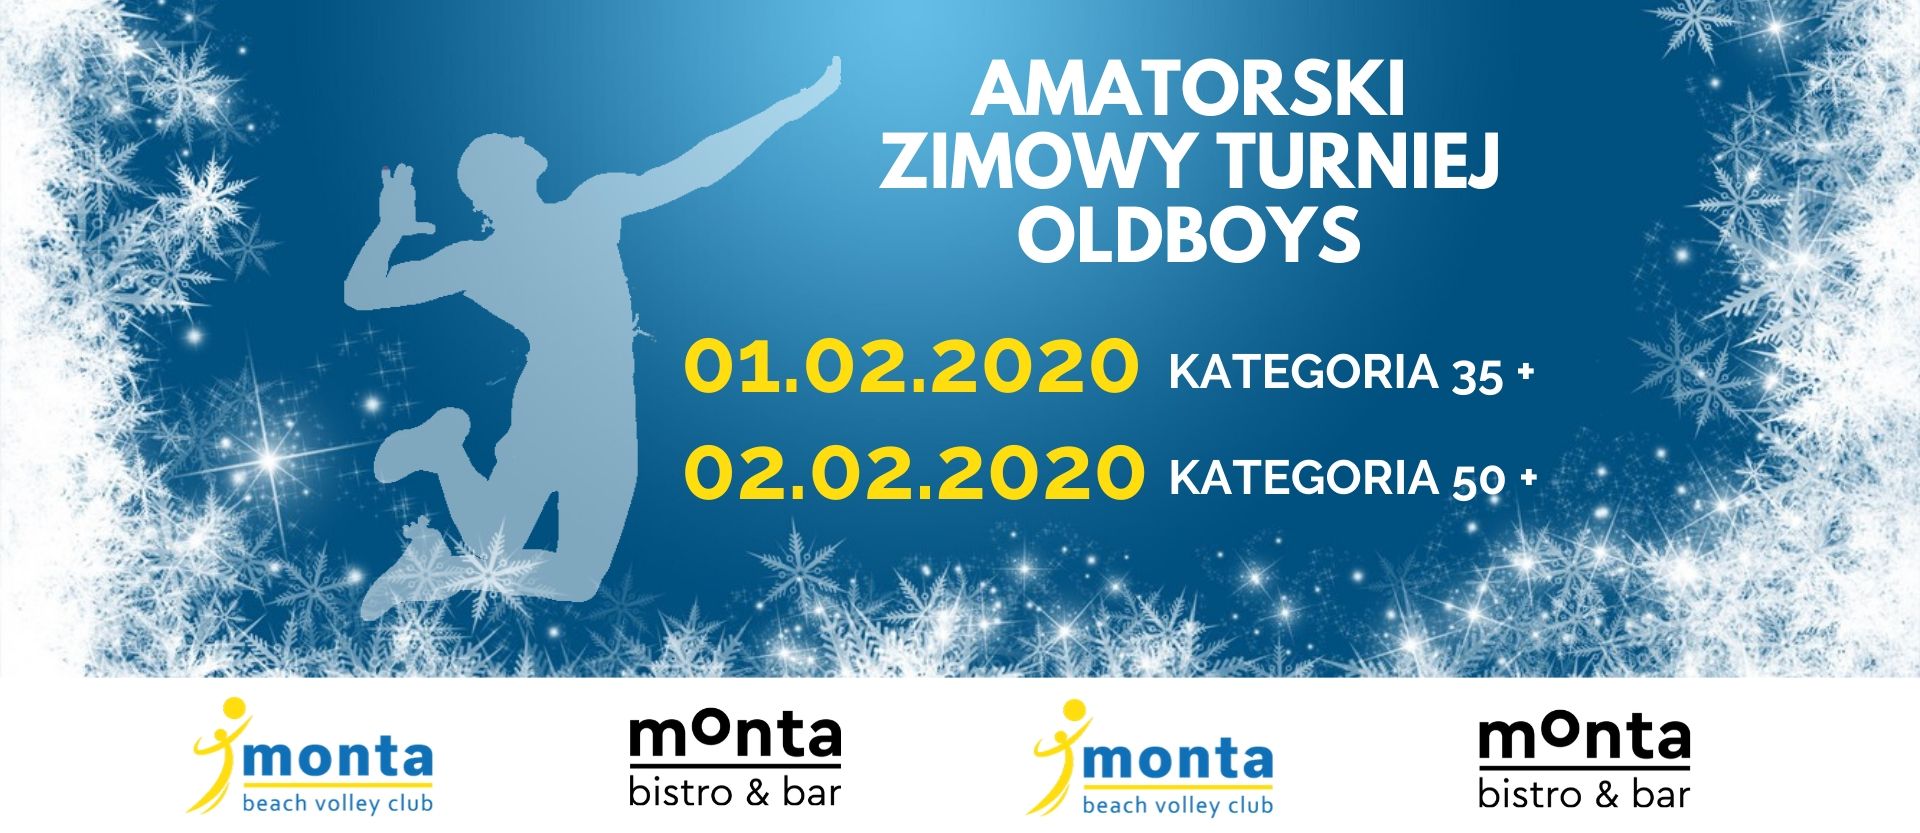 Amatorski zimowy turniej w kategorii Oldboys 02.02.2020